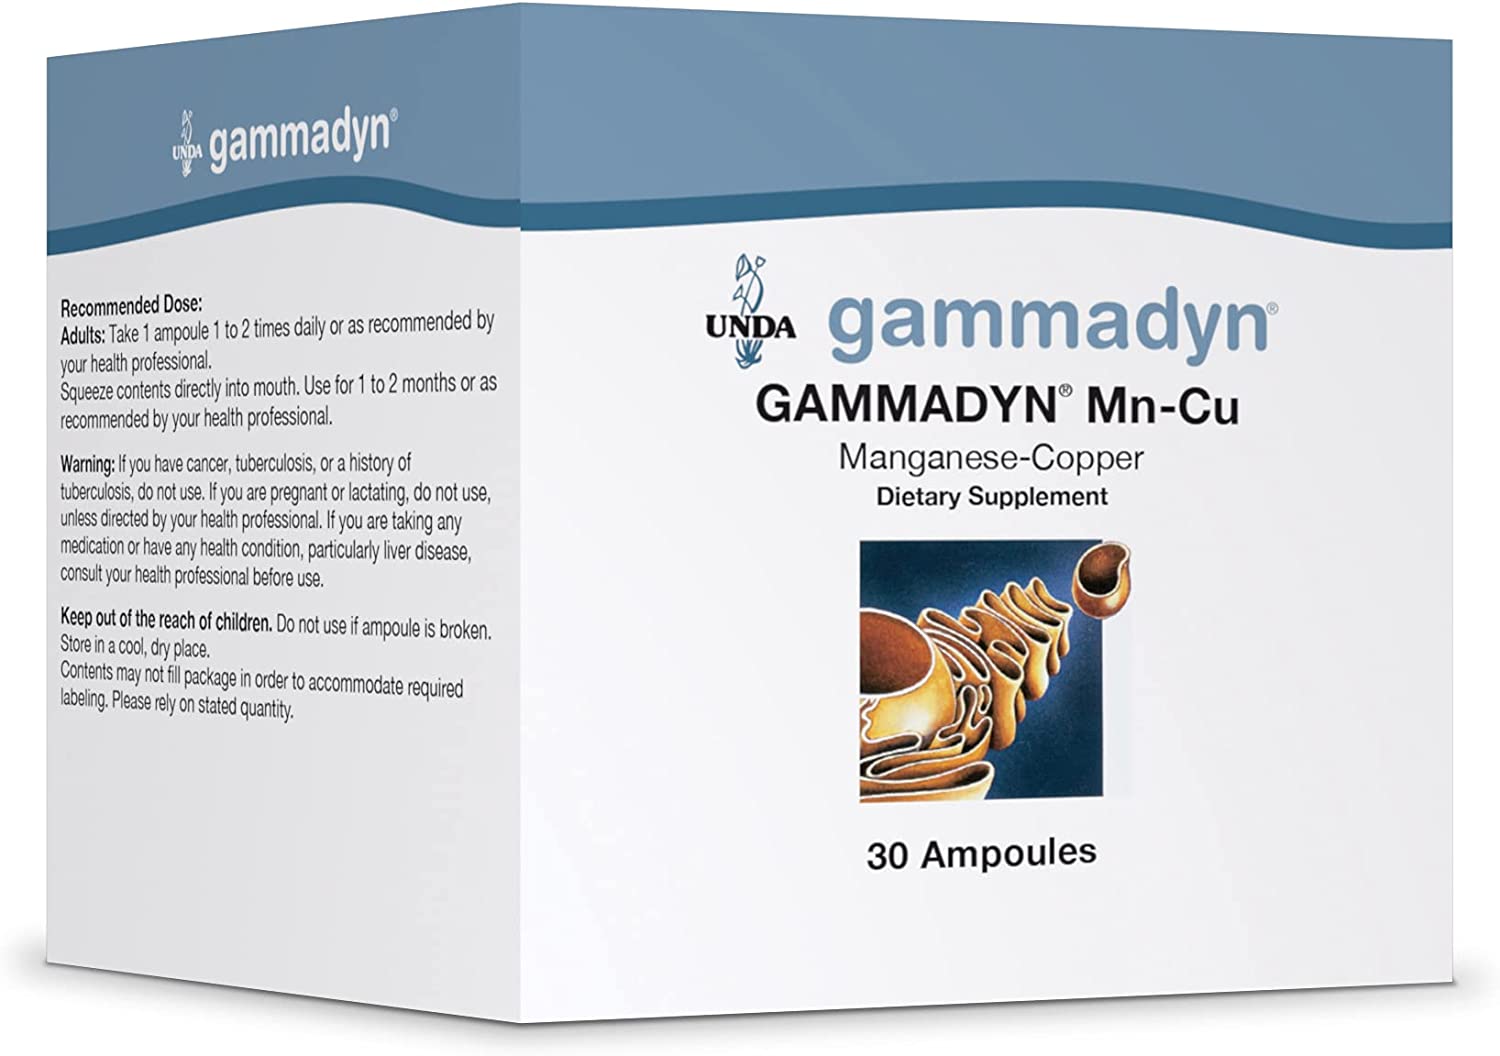 GammadynMn-Cu